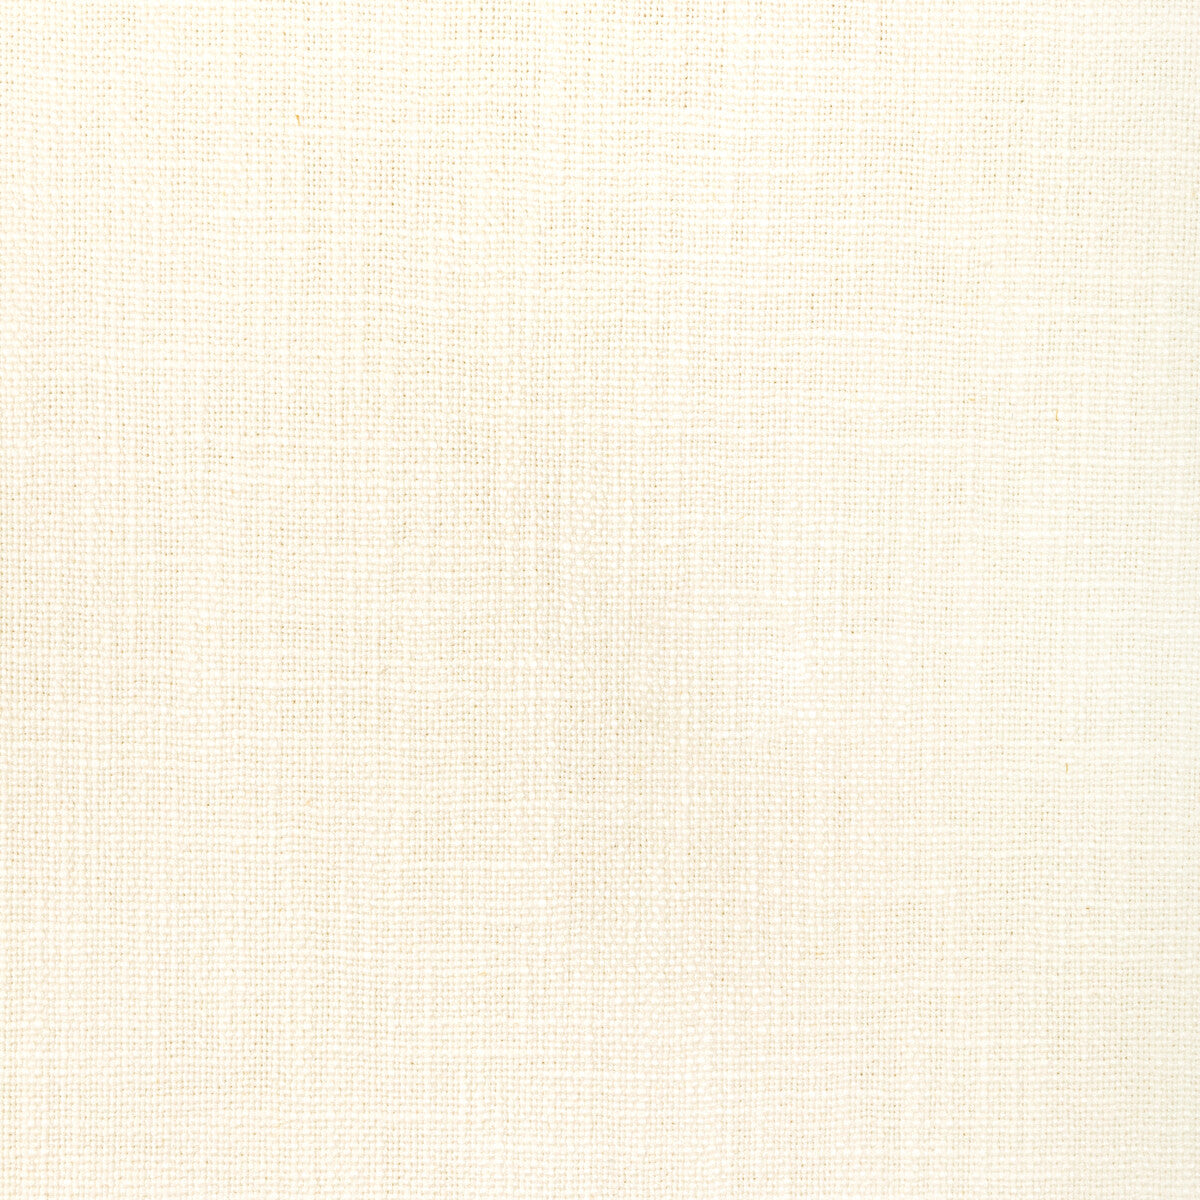 Kravet Basics fabric in 35524-1 color - pattern 35524.1.0 - by Kravet Basics